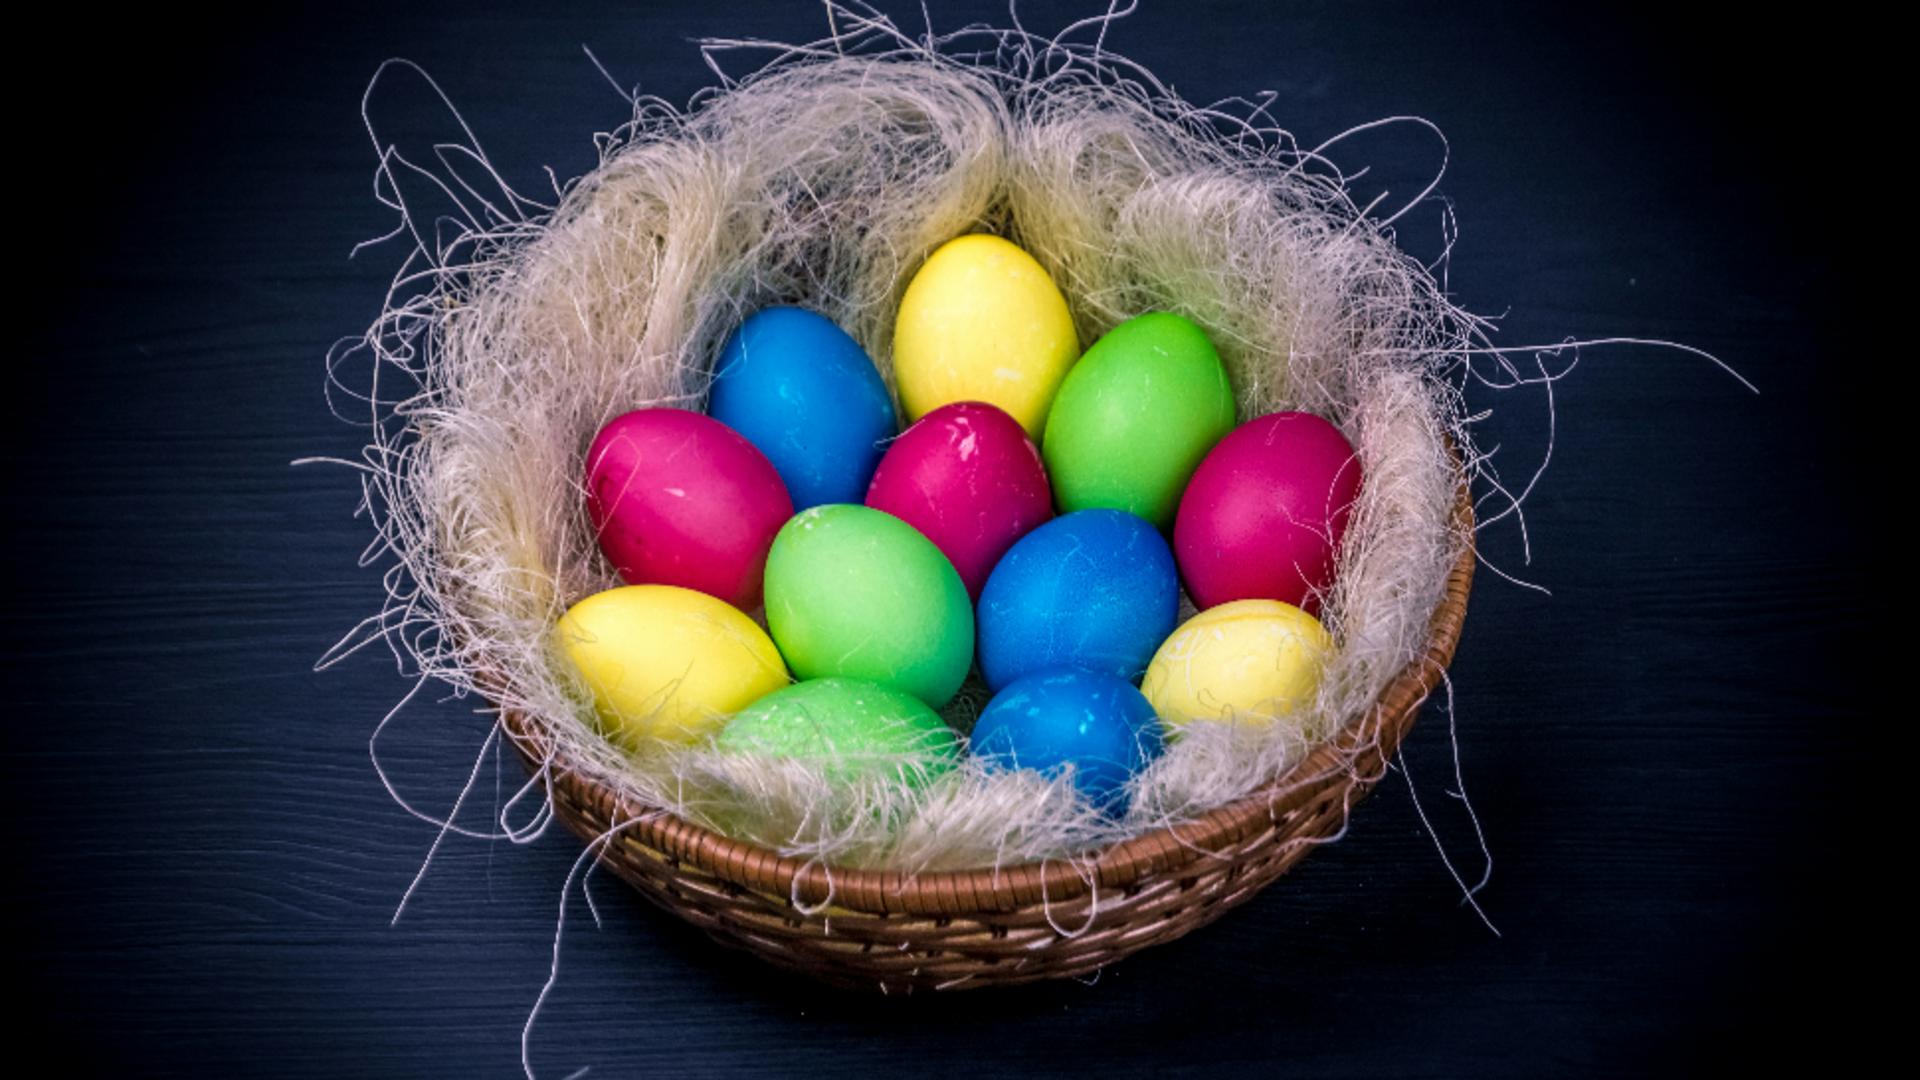 Pericolul neștiut din ouăle de Paște gata vopsite, din comerț. Trebuie să renunți la obiceiul de a le cumpăra!/ unsplash.com